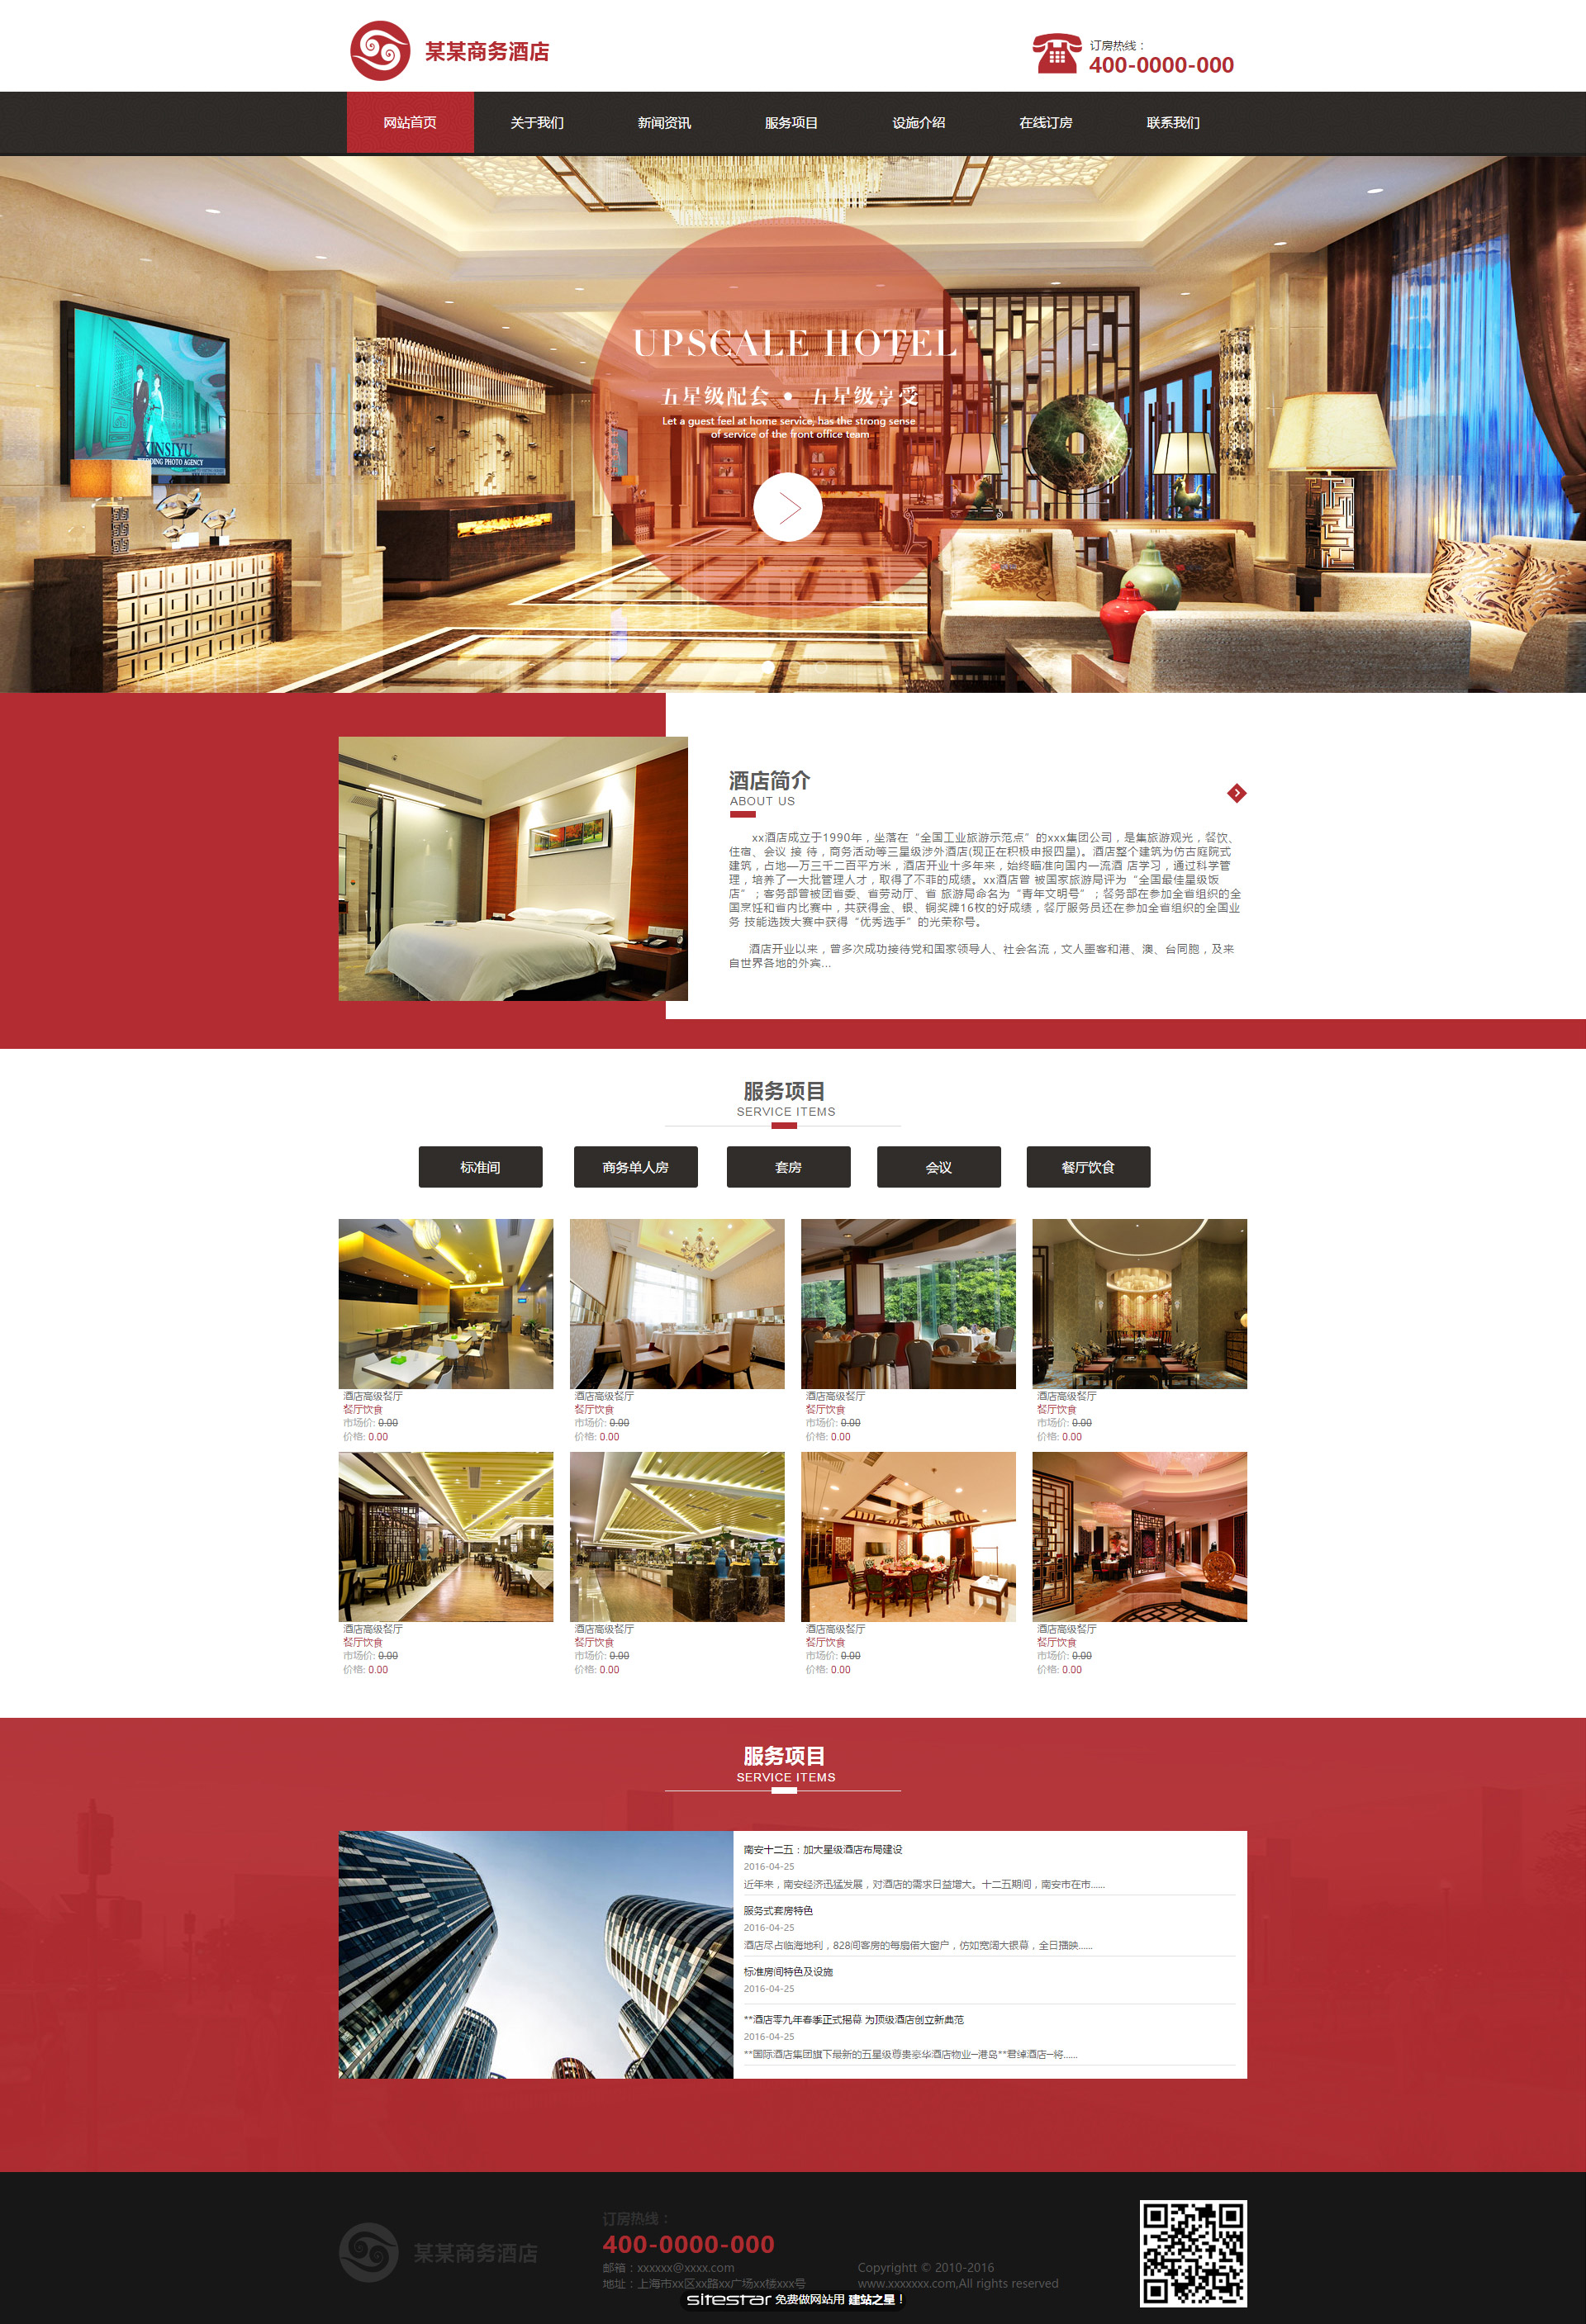 企业网站精美模板-hotels-51